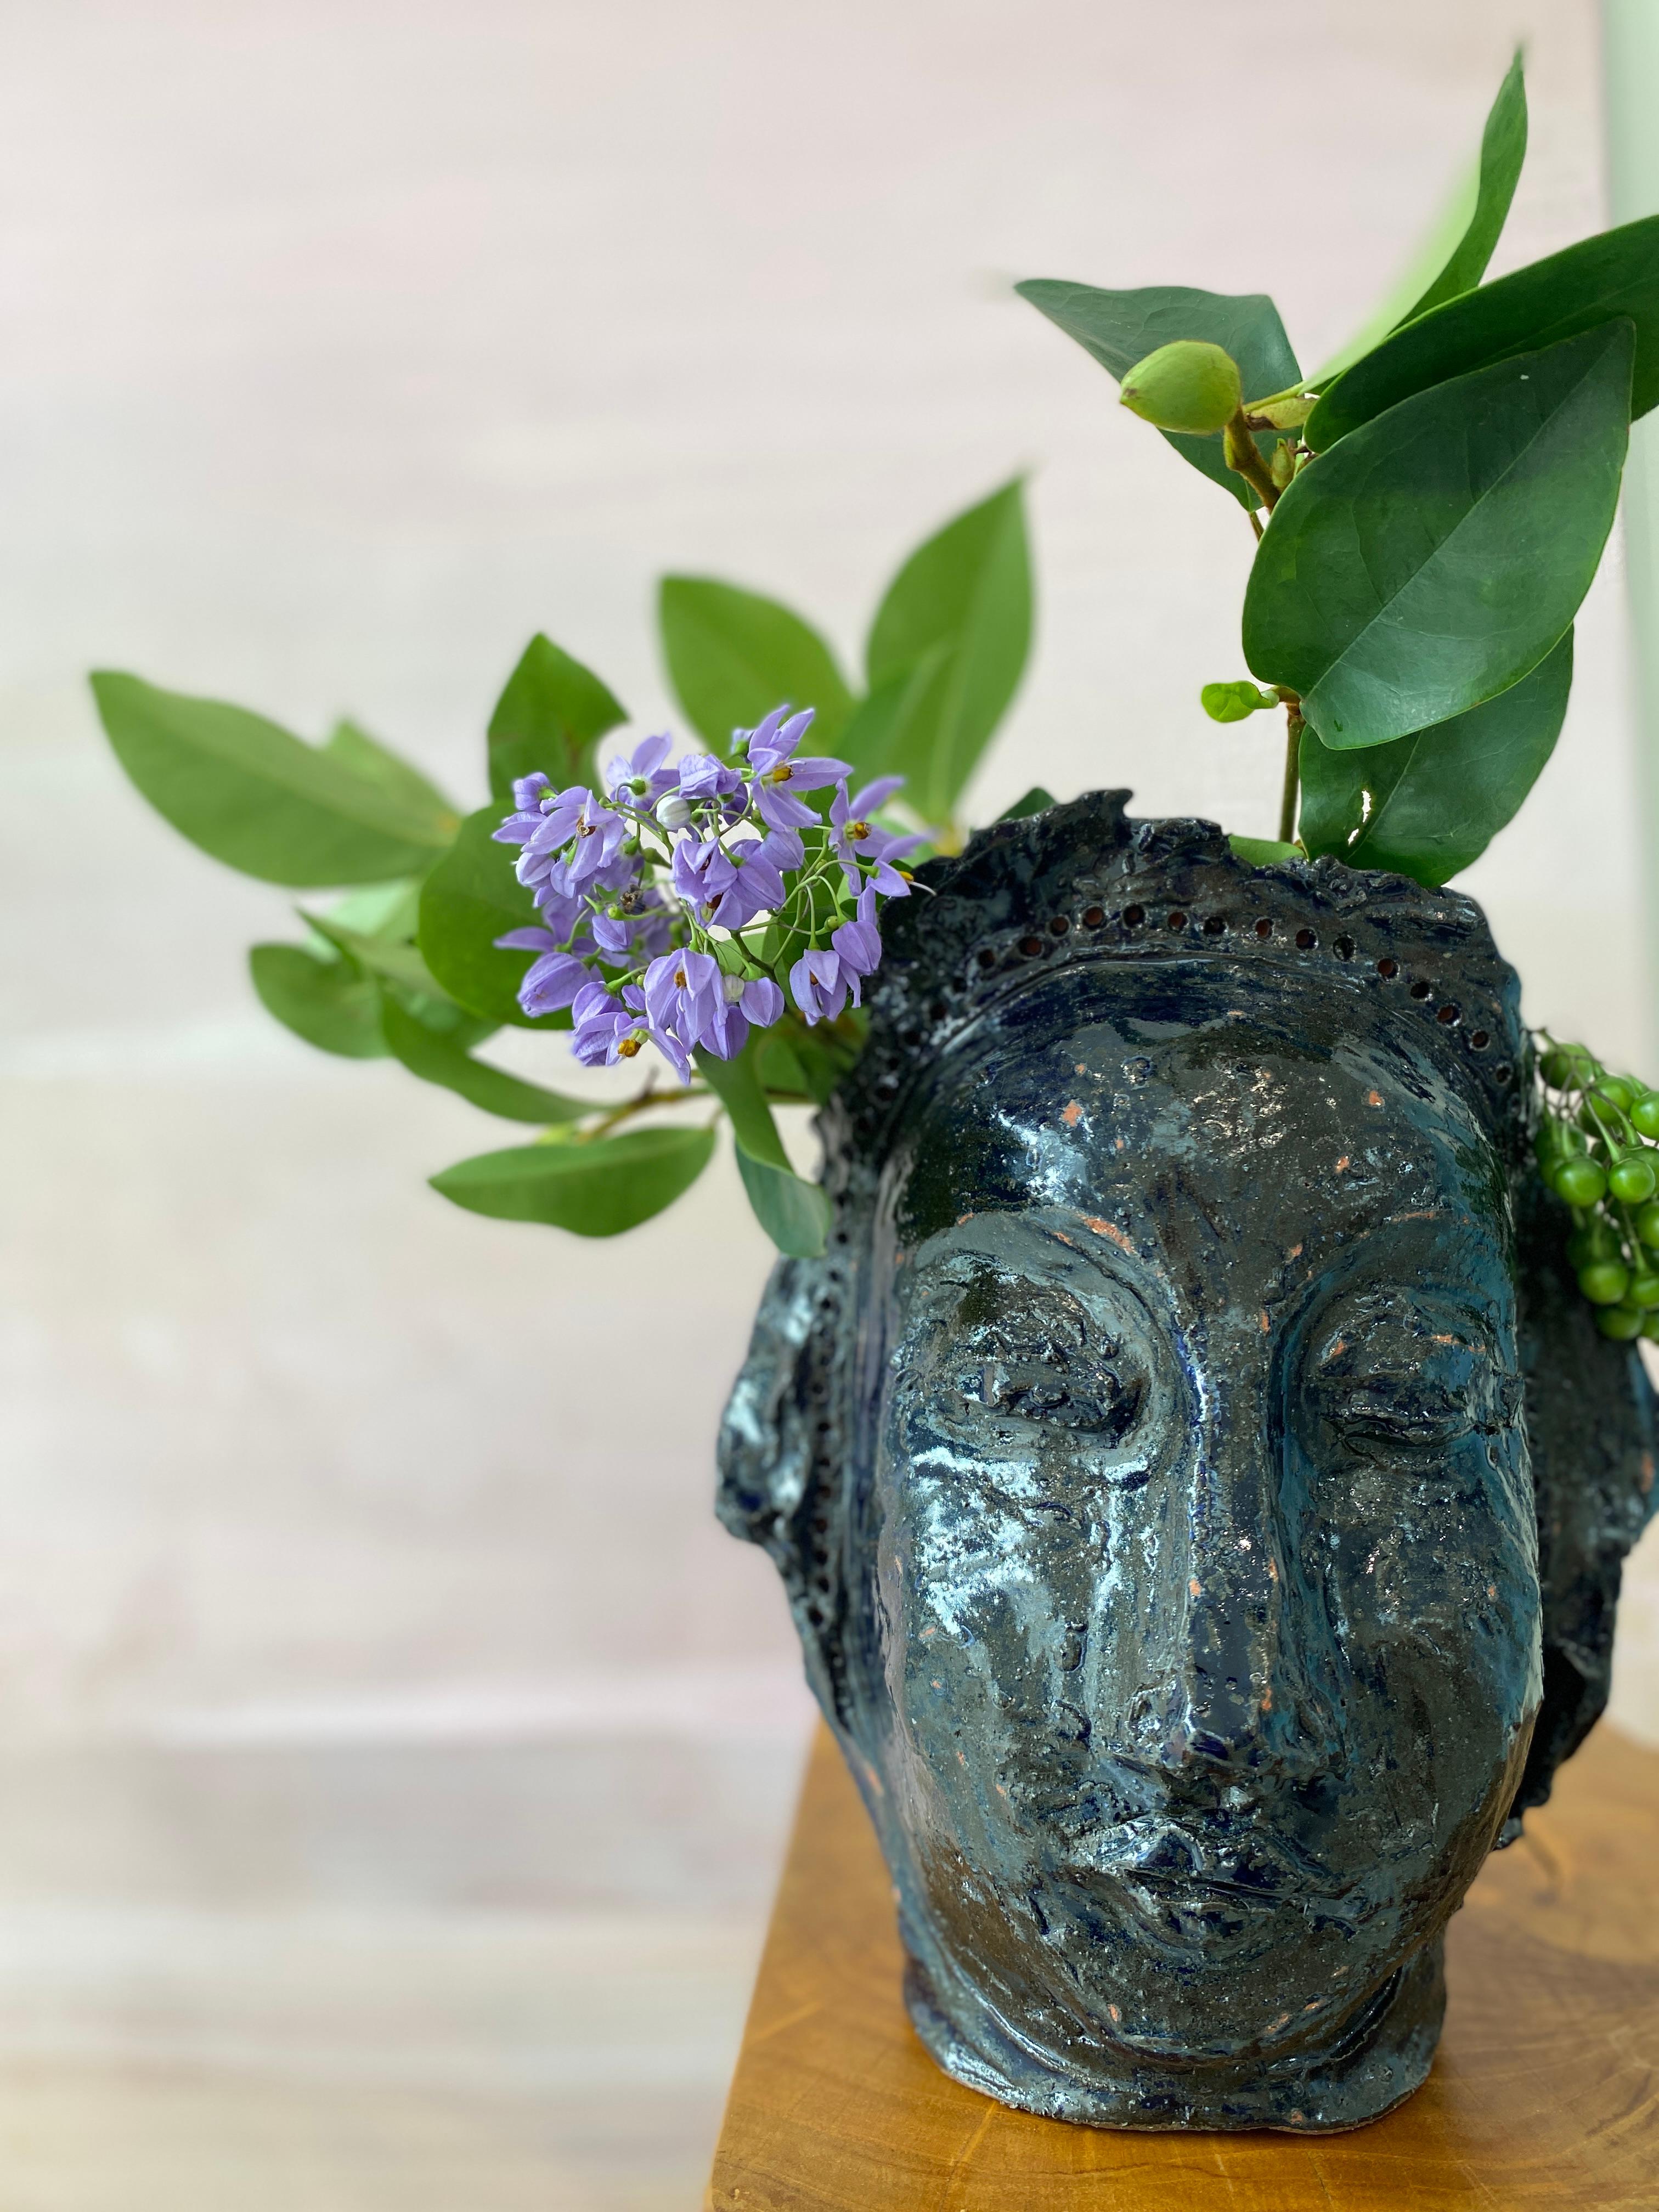 Werten Sie Ihren Raum mit dieser außergewöhnlichen Vase mit Gesicht und Kopf aus Ton auf, die Sie fesseln und inspirieren wird. Diese einzigartige Schönheit wurde von Kathleen in einer jahrhundertealten Technik der Handarbeit hergestellt. Sie ist 26